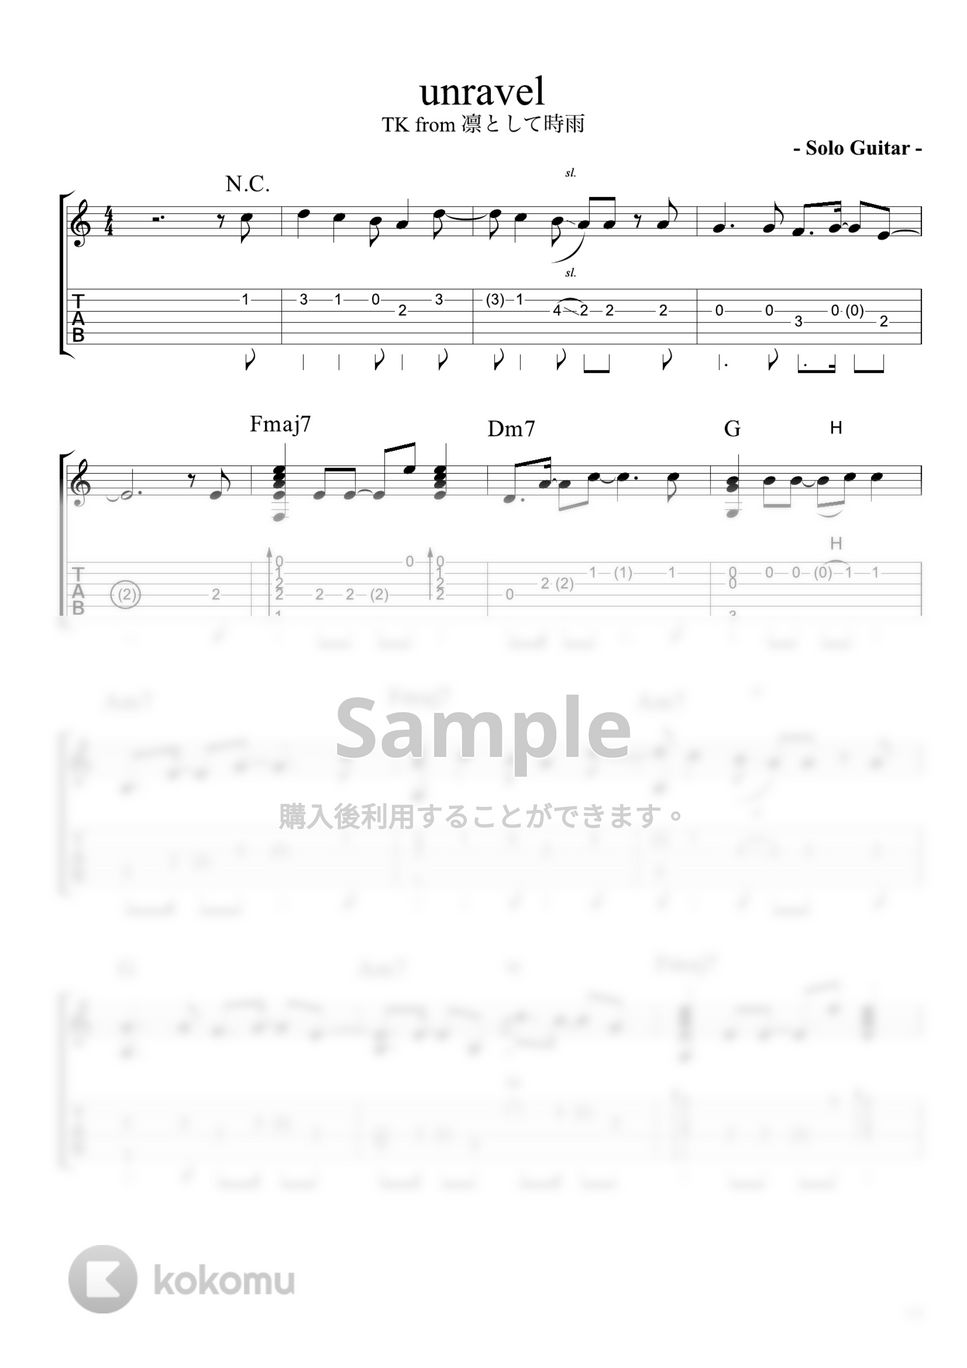 東京喰種 - UNRAVEL (ソロ・ギター) by Strings Guitar School